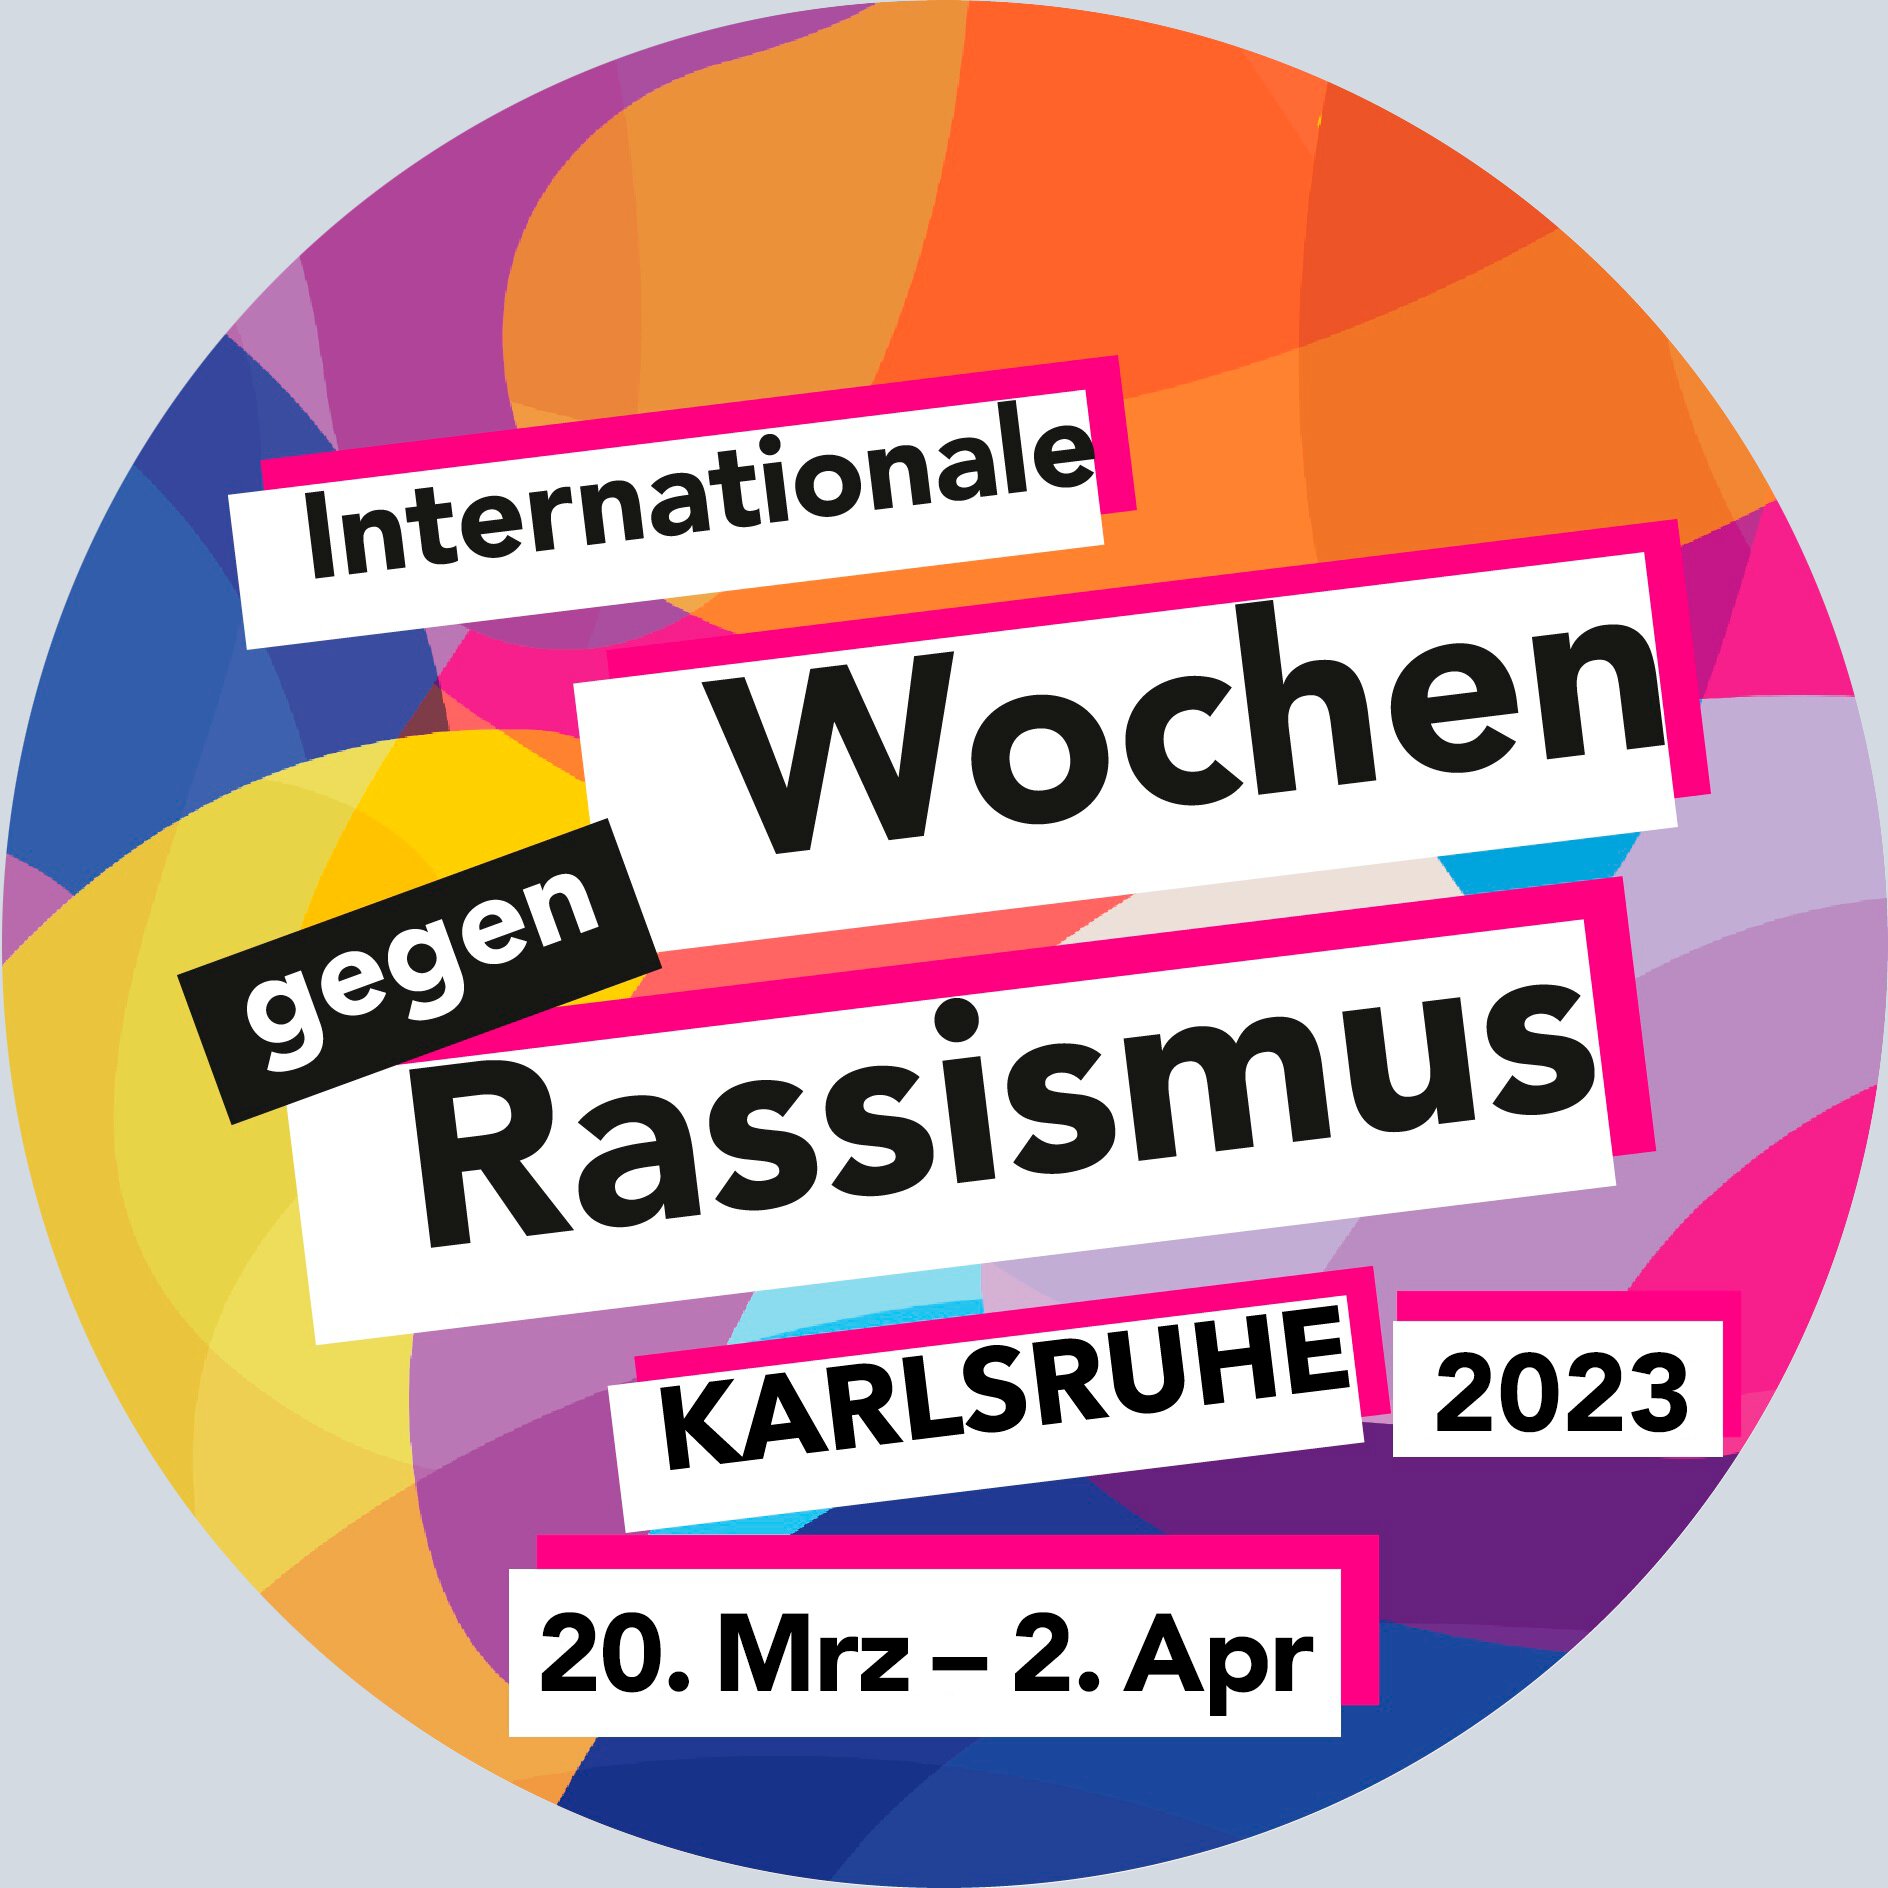 Die Internationalen Wochen gegen Rassismus in Karlsruhe finden vom 20. März bis zum 2. April 2023 statt.